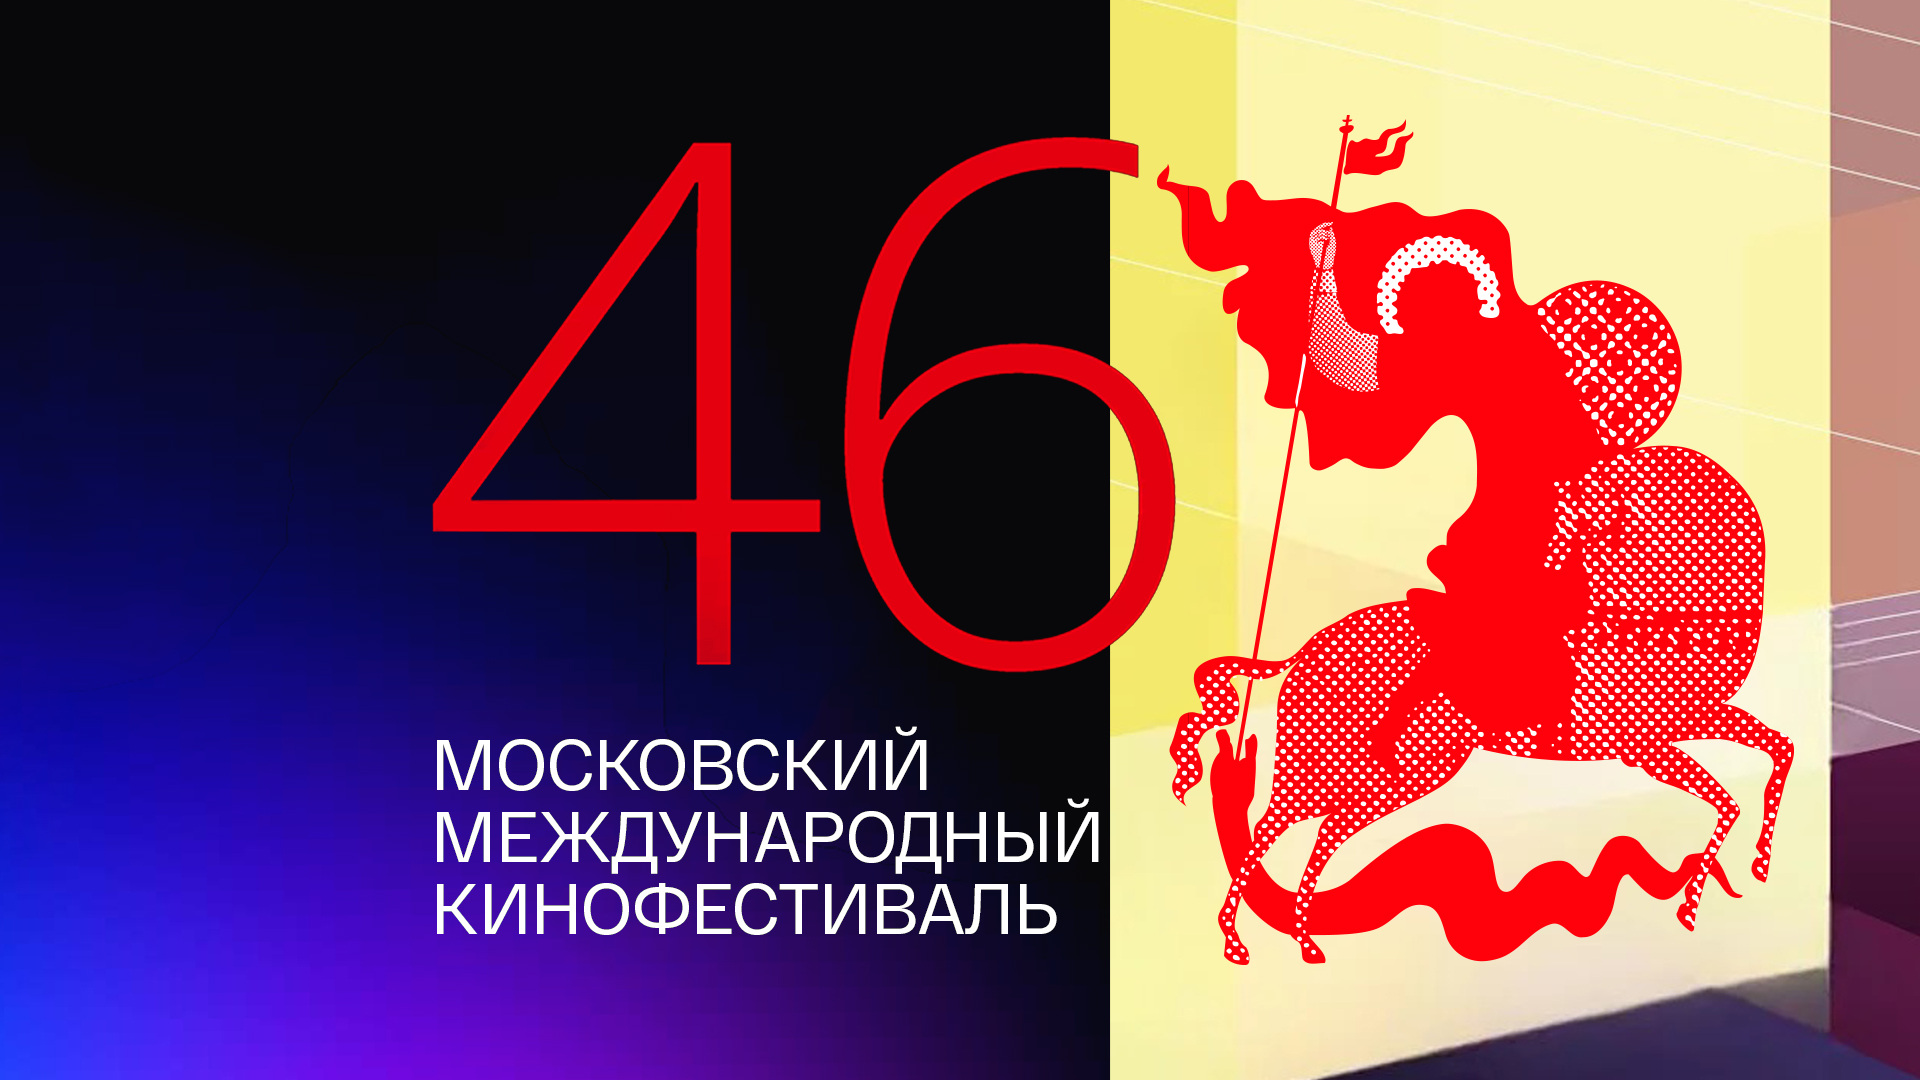 46-й Московский Международный кинофестиваль. Торжественное закрытие